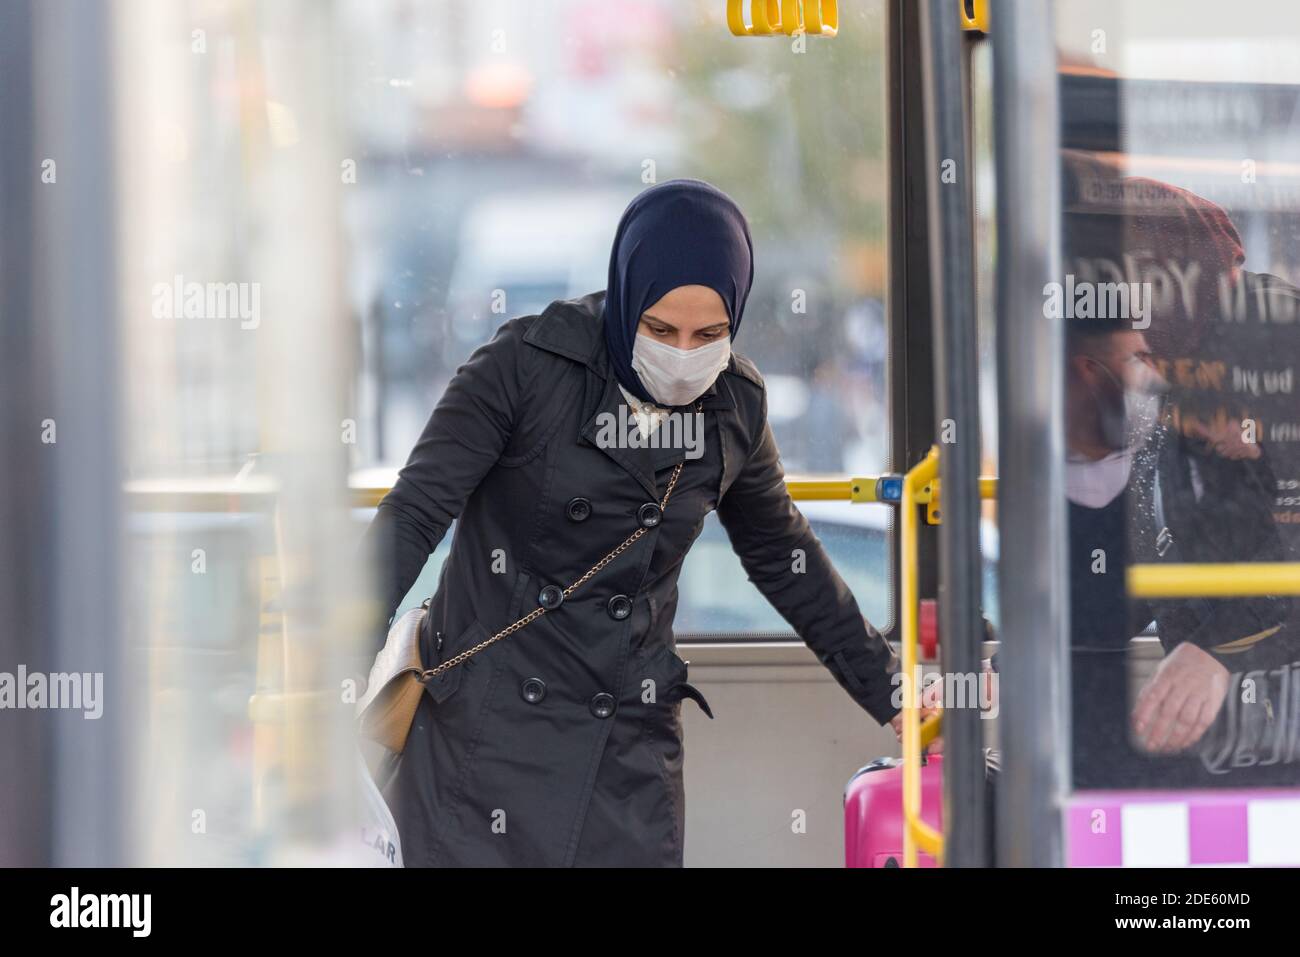 Persone turche non identificate che indossano maschere facciali di protezione si muovono per ottenere Fuori agli autobus durante il coronavirus COVID-19 Epidemic.Istanbul,Turchia.16 novembre 20 Foto Stock